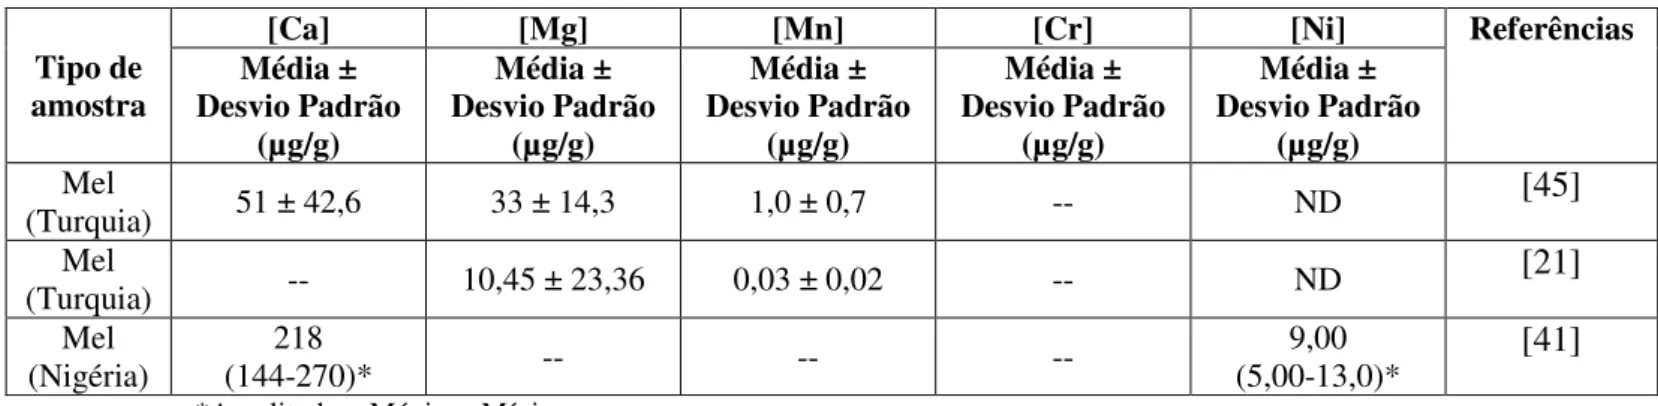 Tabela 3 - Teores de Ca, Mg, Mn, Cr e Ni determinados em méis e descritos na literatura